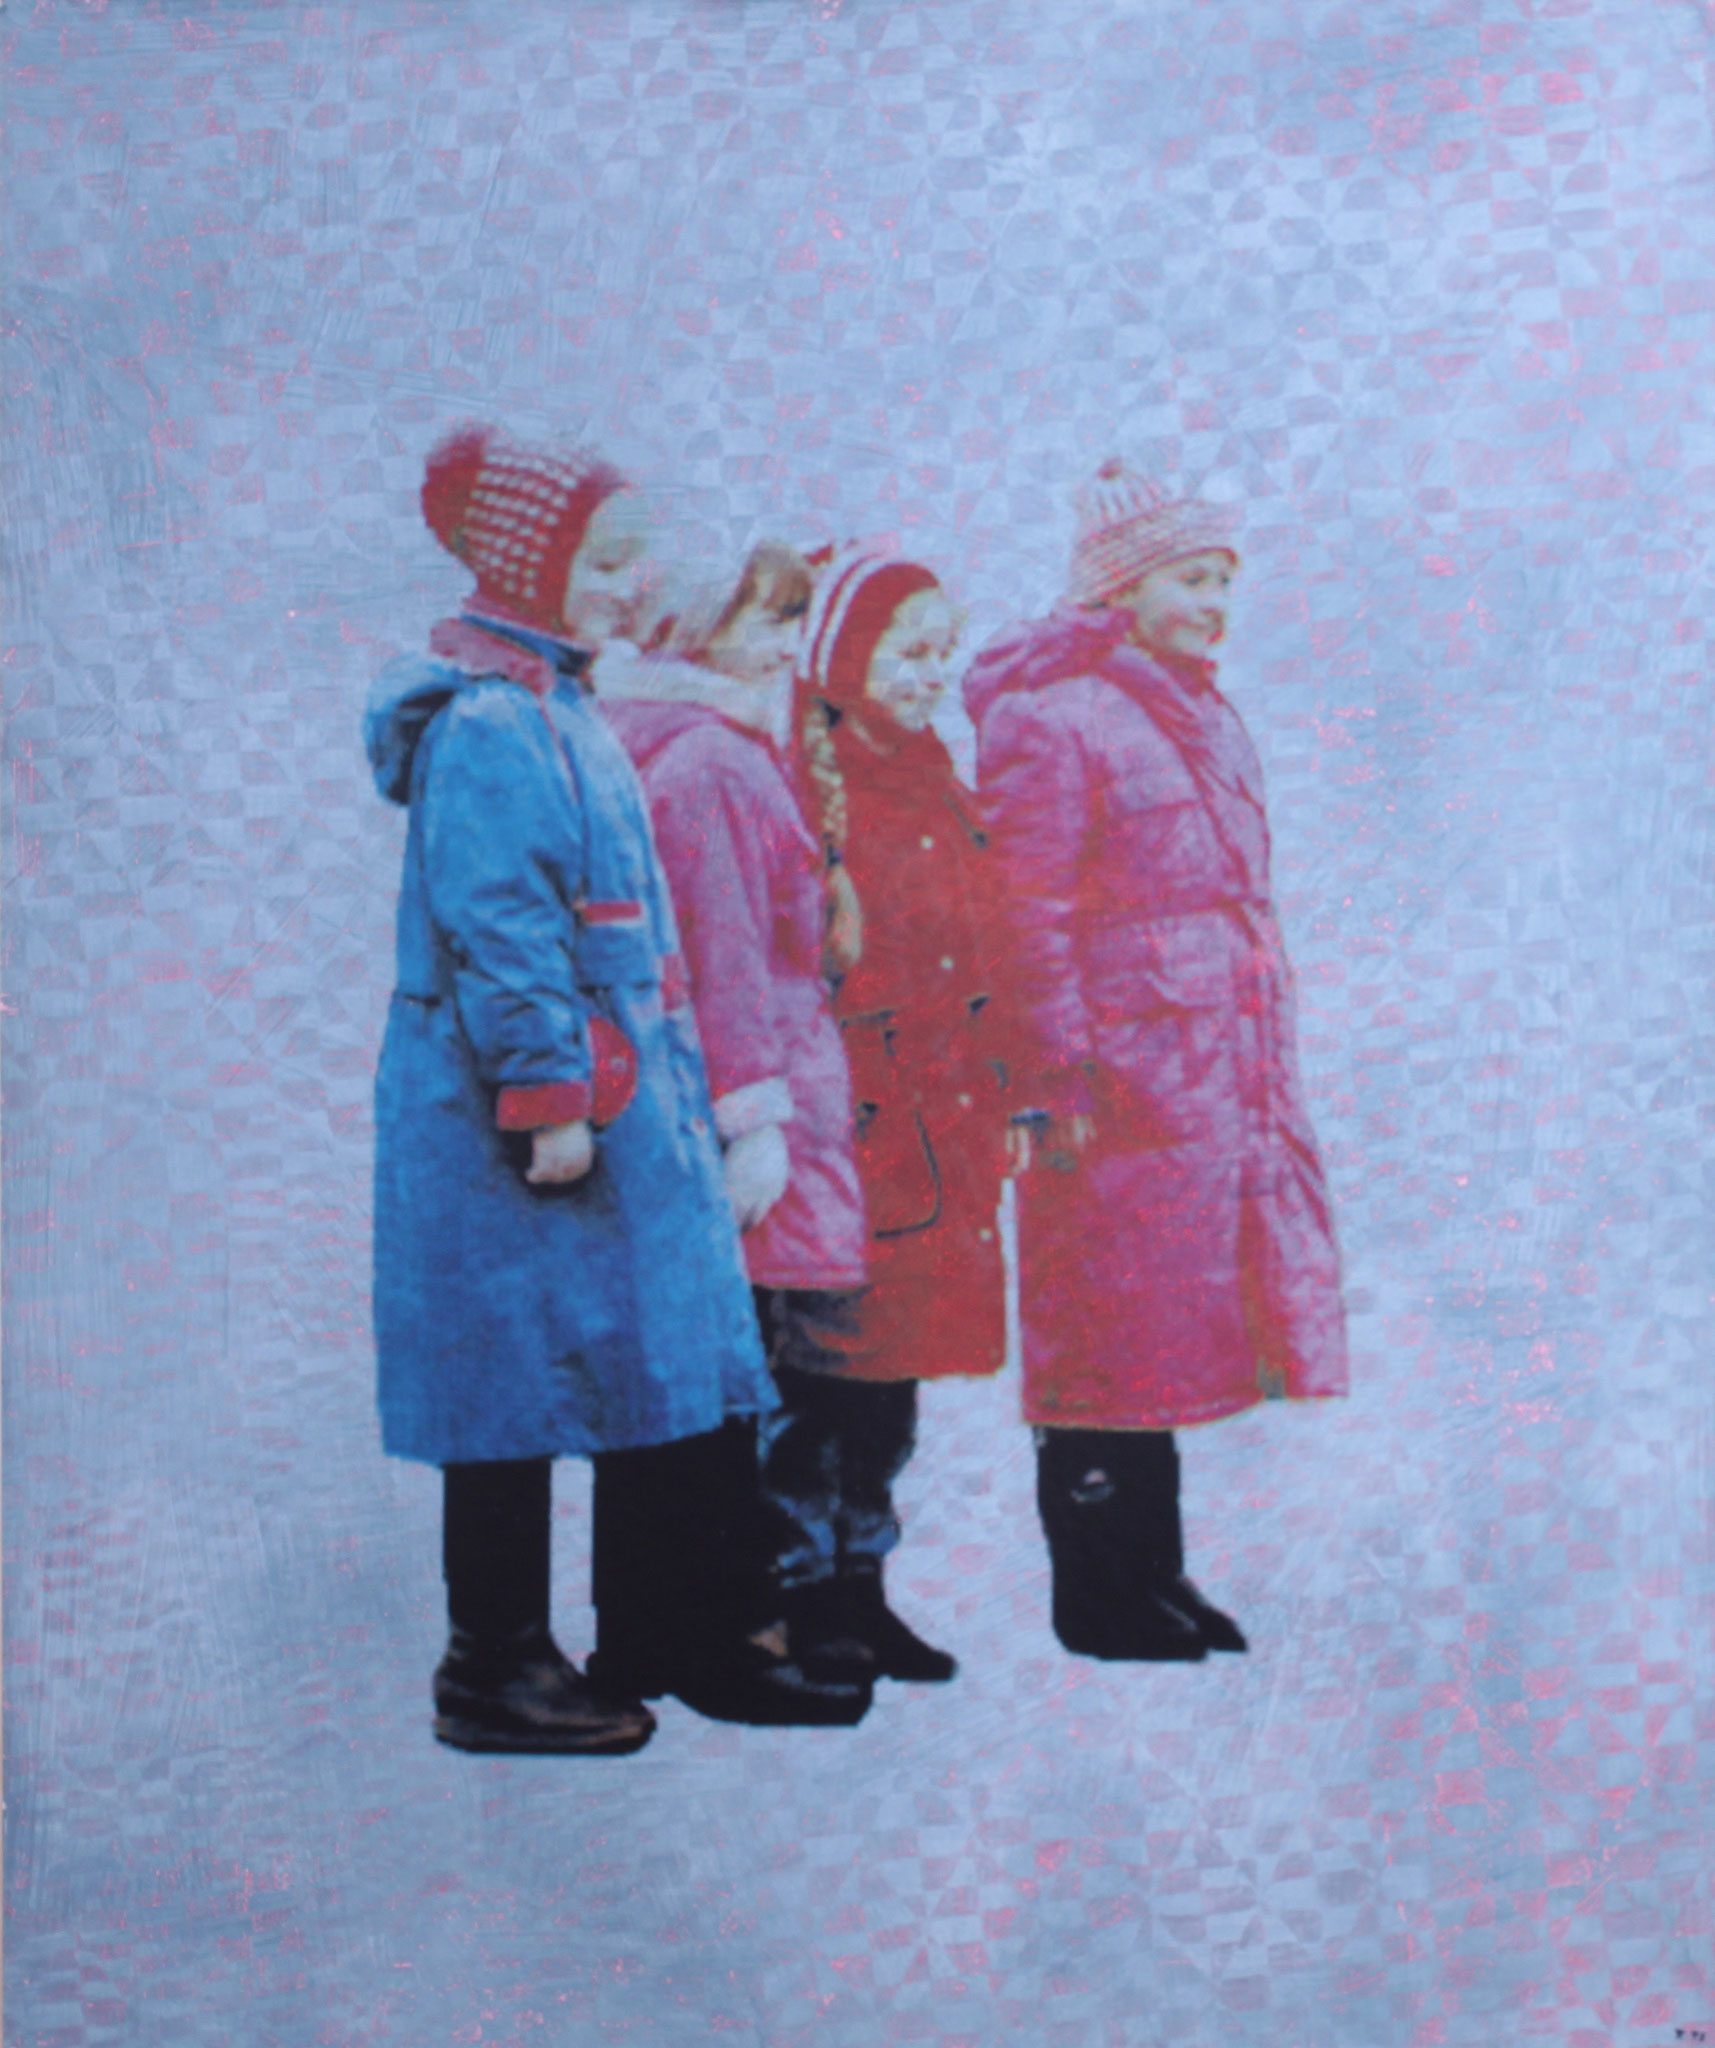 Inge Kracht, "Nachmittagslächeln", Mischtechnik auf Karton, 120 x100 cm, 1998